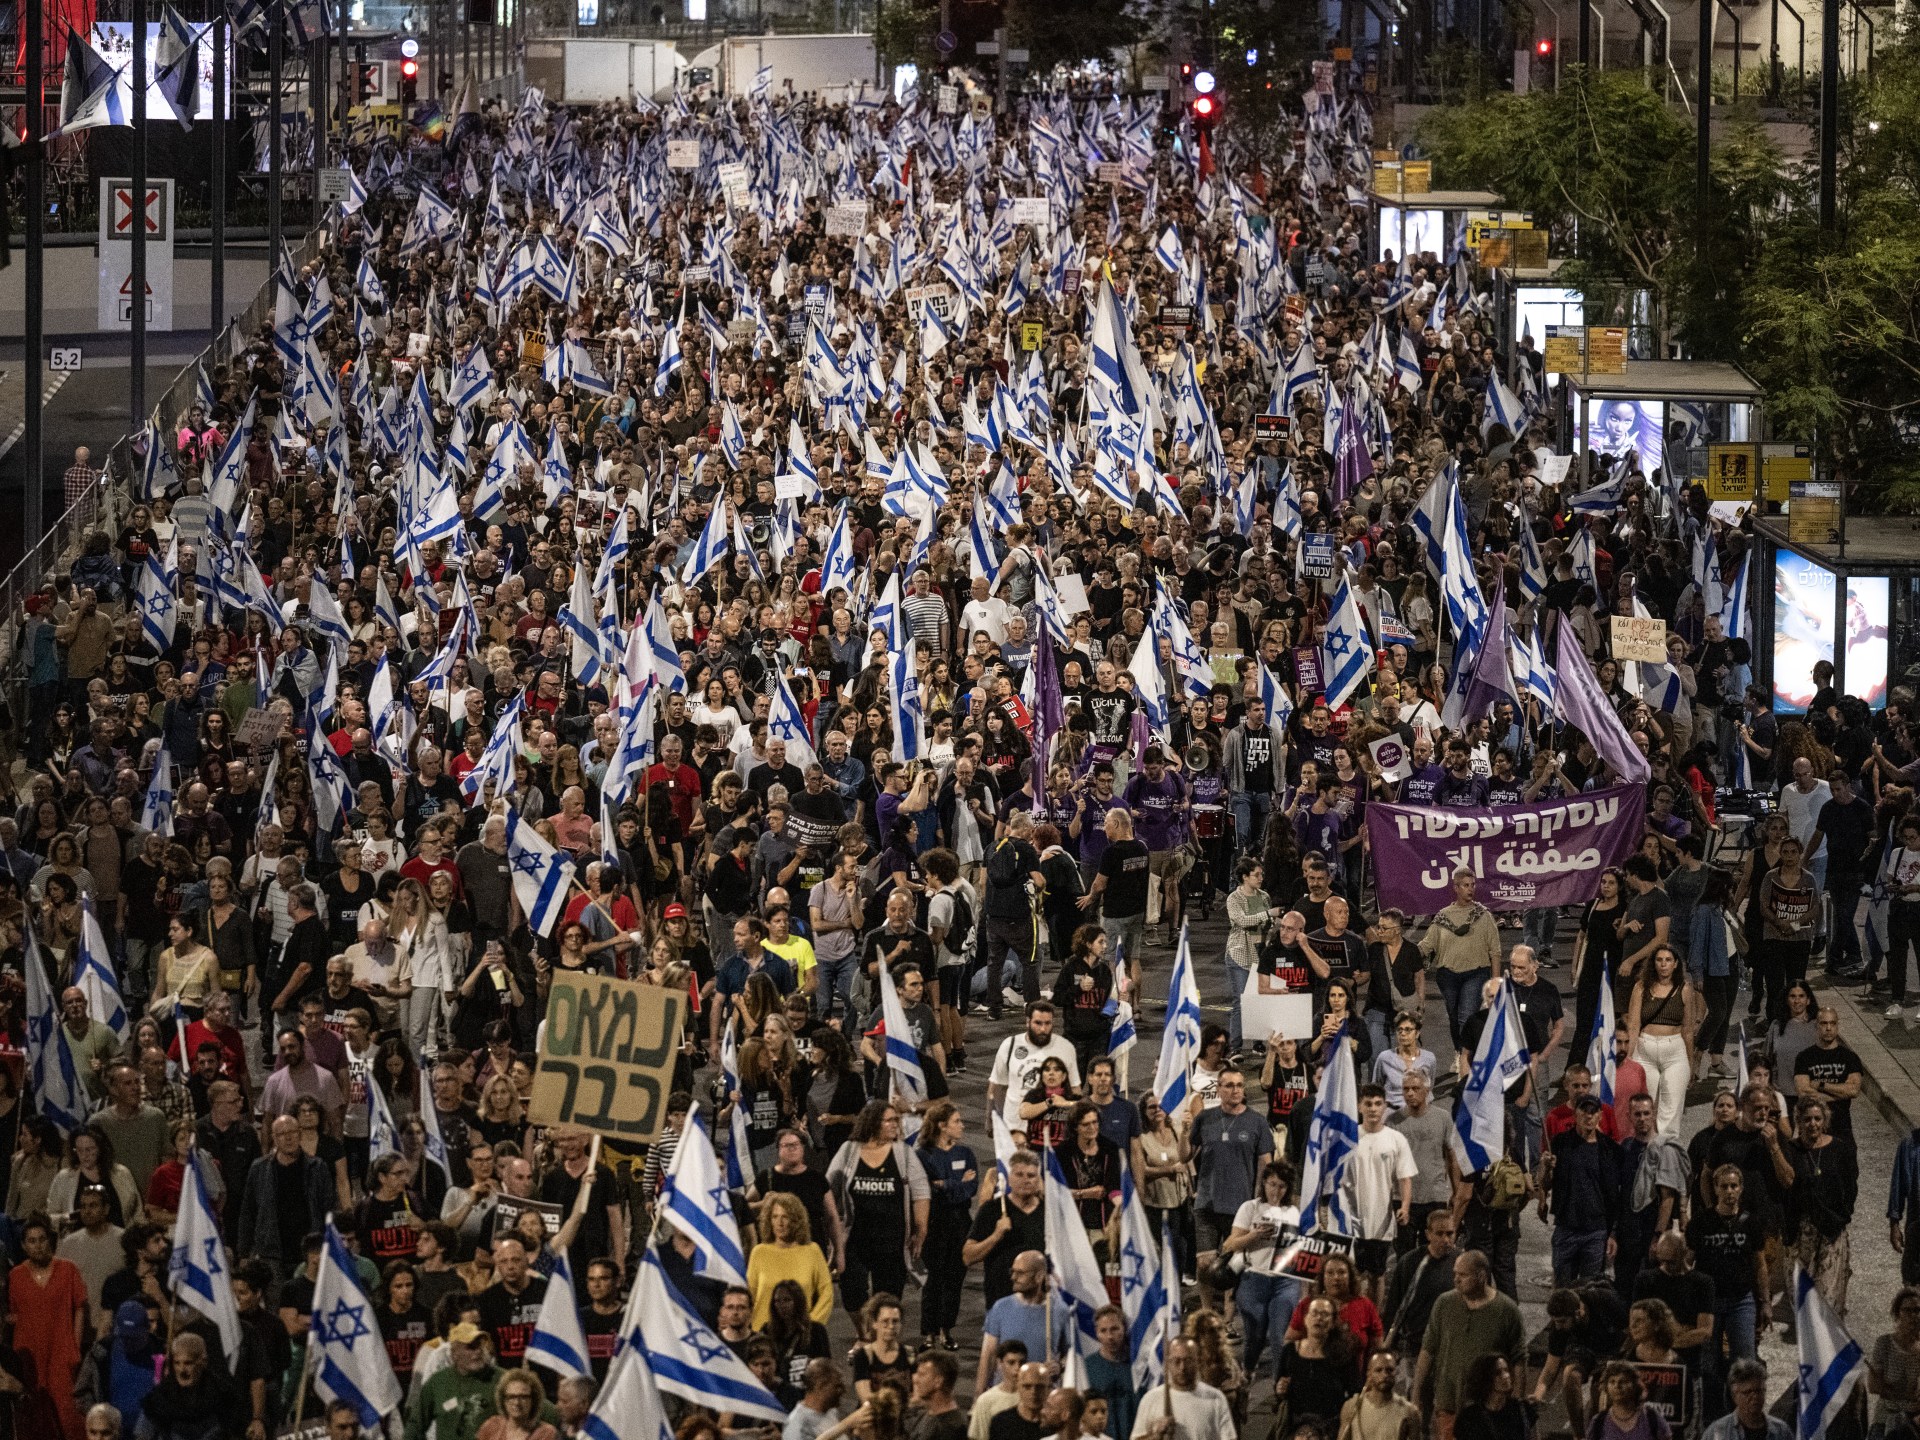 آلاف الإسرائيليين يتظاهرون للمطالبة بصفقة تبادل فورية وإسقاط حكومة نتنياهو | أخبار – البوكس نيوز